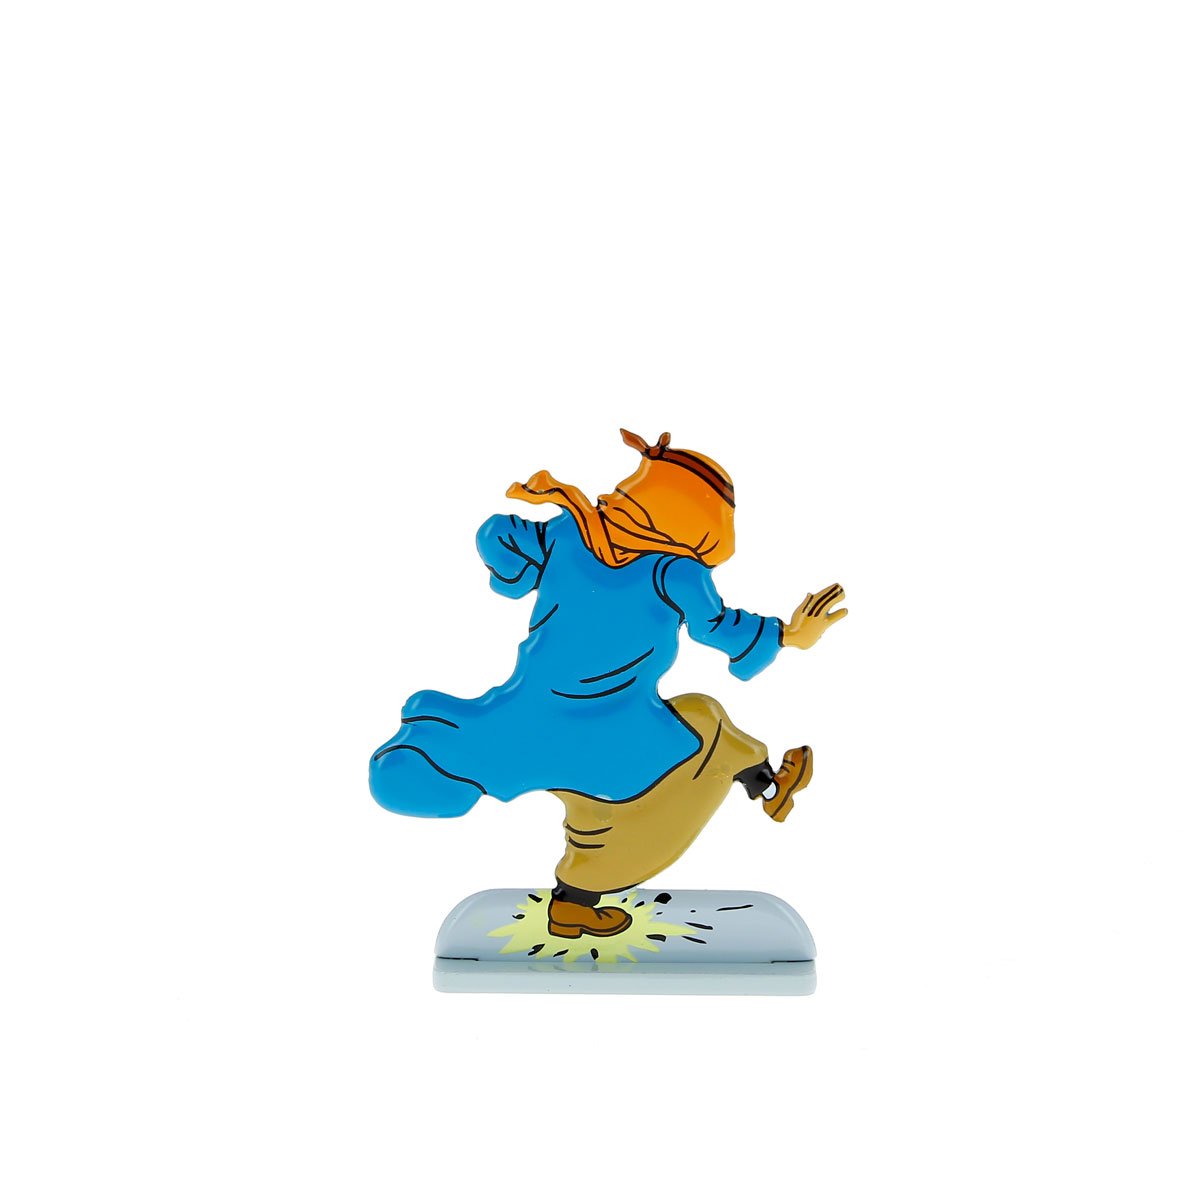 Tintin steps on a banger